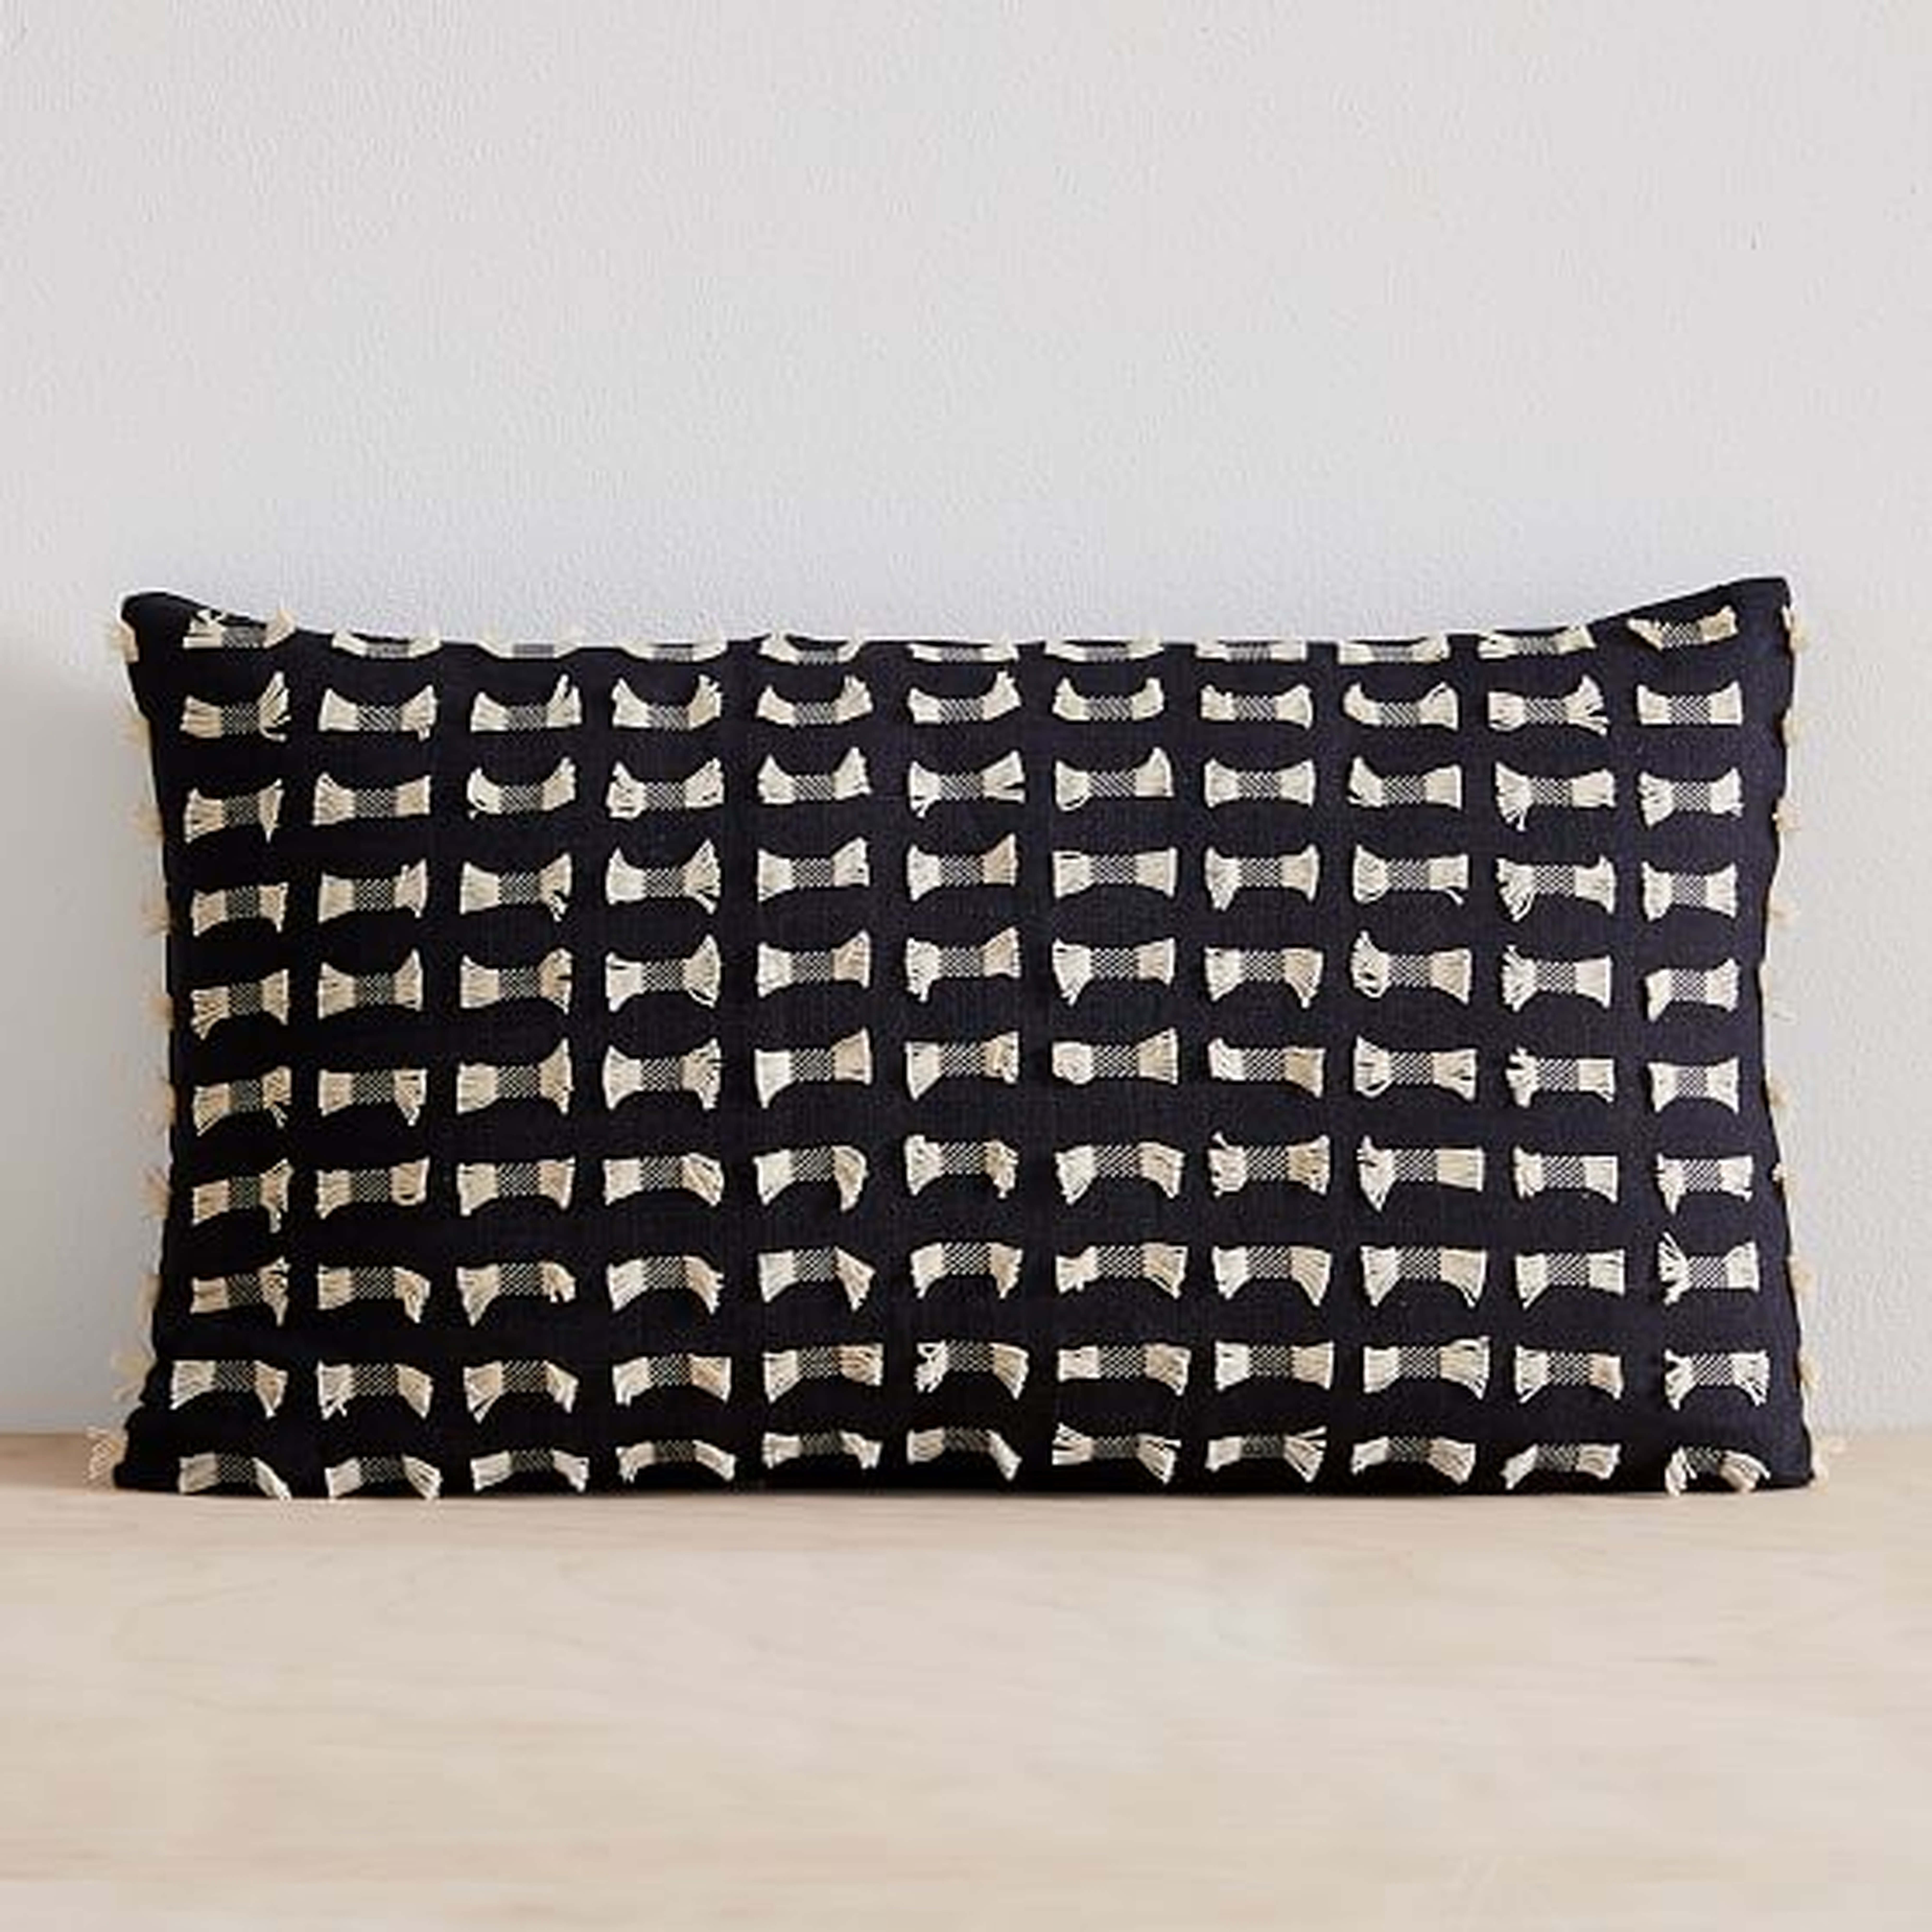 Cotton Silk Pixel Pillow Cover, Set of 2, Black, 12"x21" - West Elm